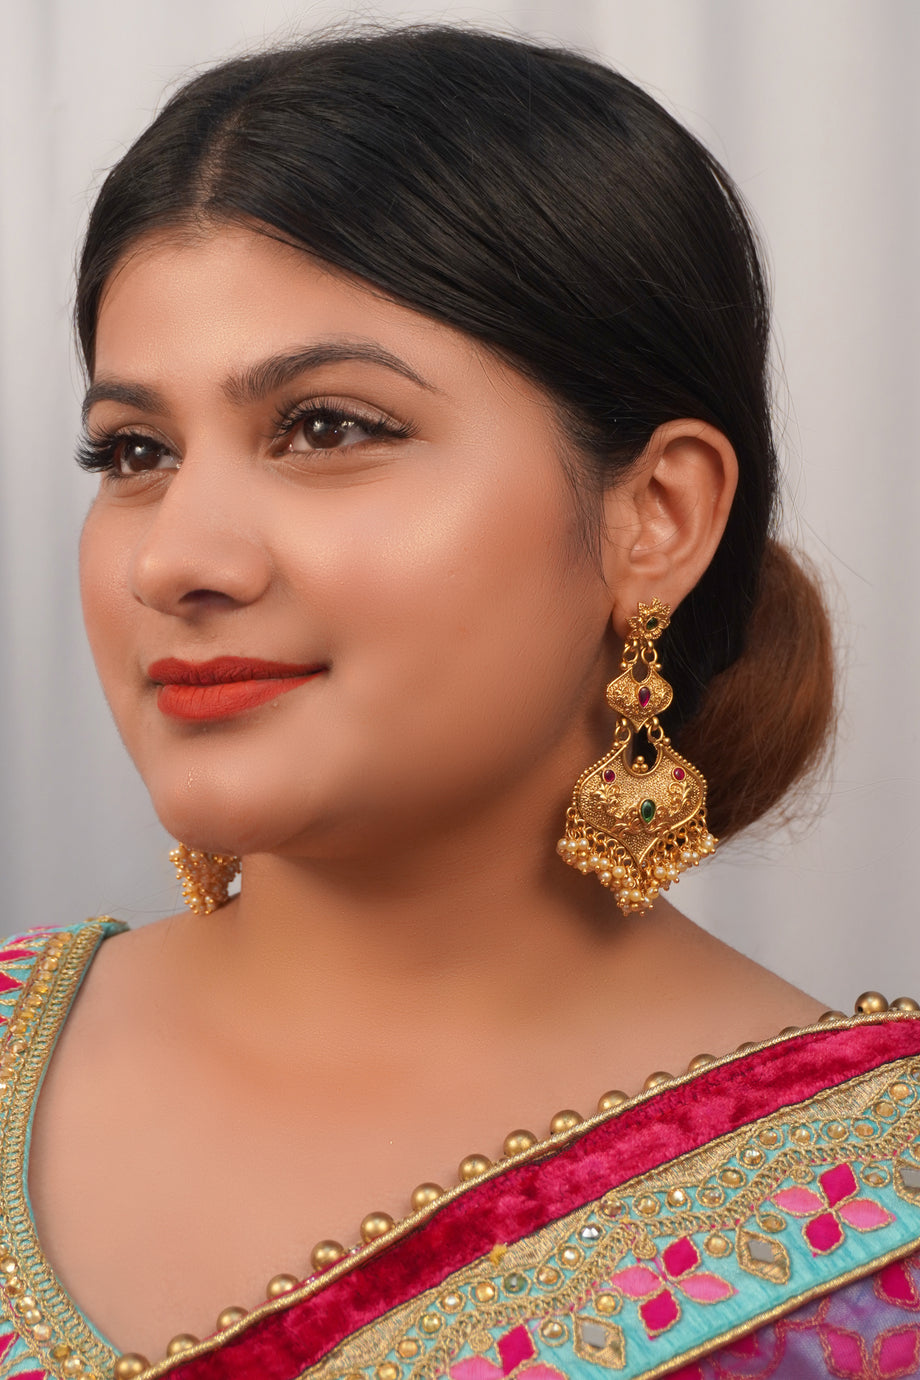 kazuya55 | Linktree | Traditional wedding jewellery, Bengali bridal makeup,  Bridal makeup wedding